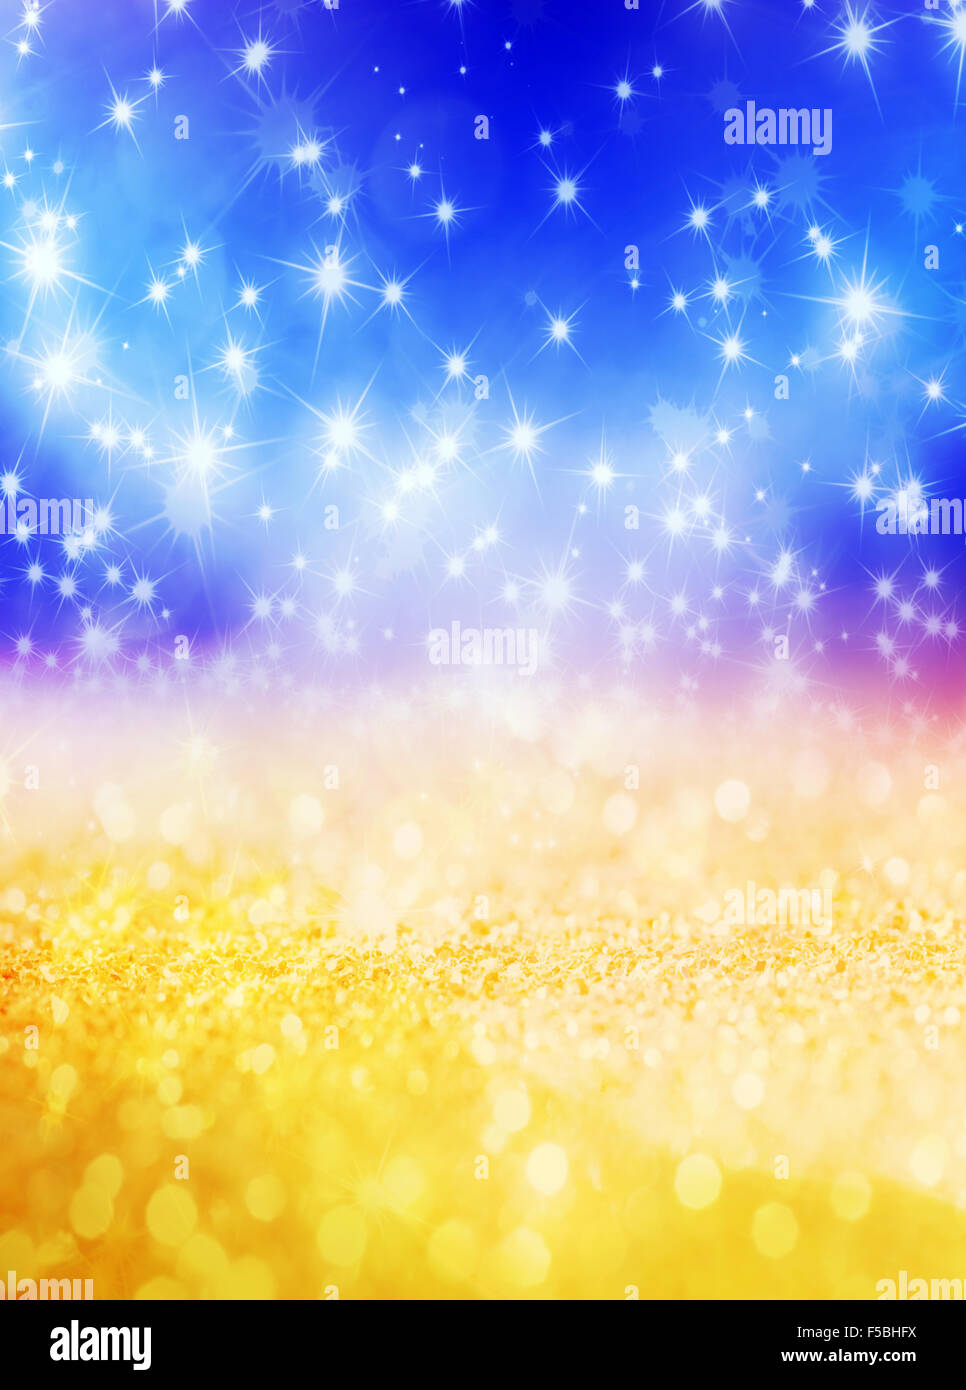 Abstract sfondo di Natale con stelle luccicanti in colore blu e oro. Nuovo anno luci, cielo stellato Foto Stock